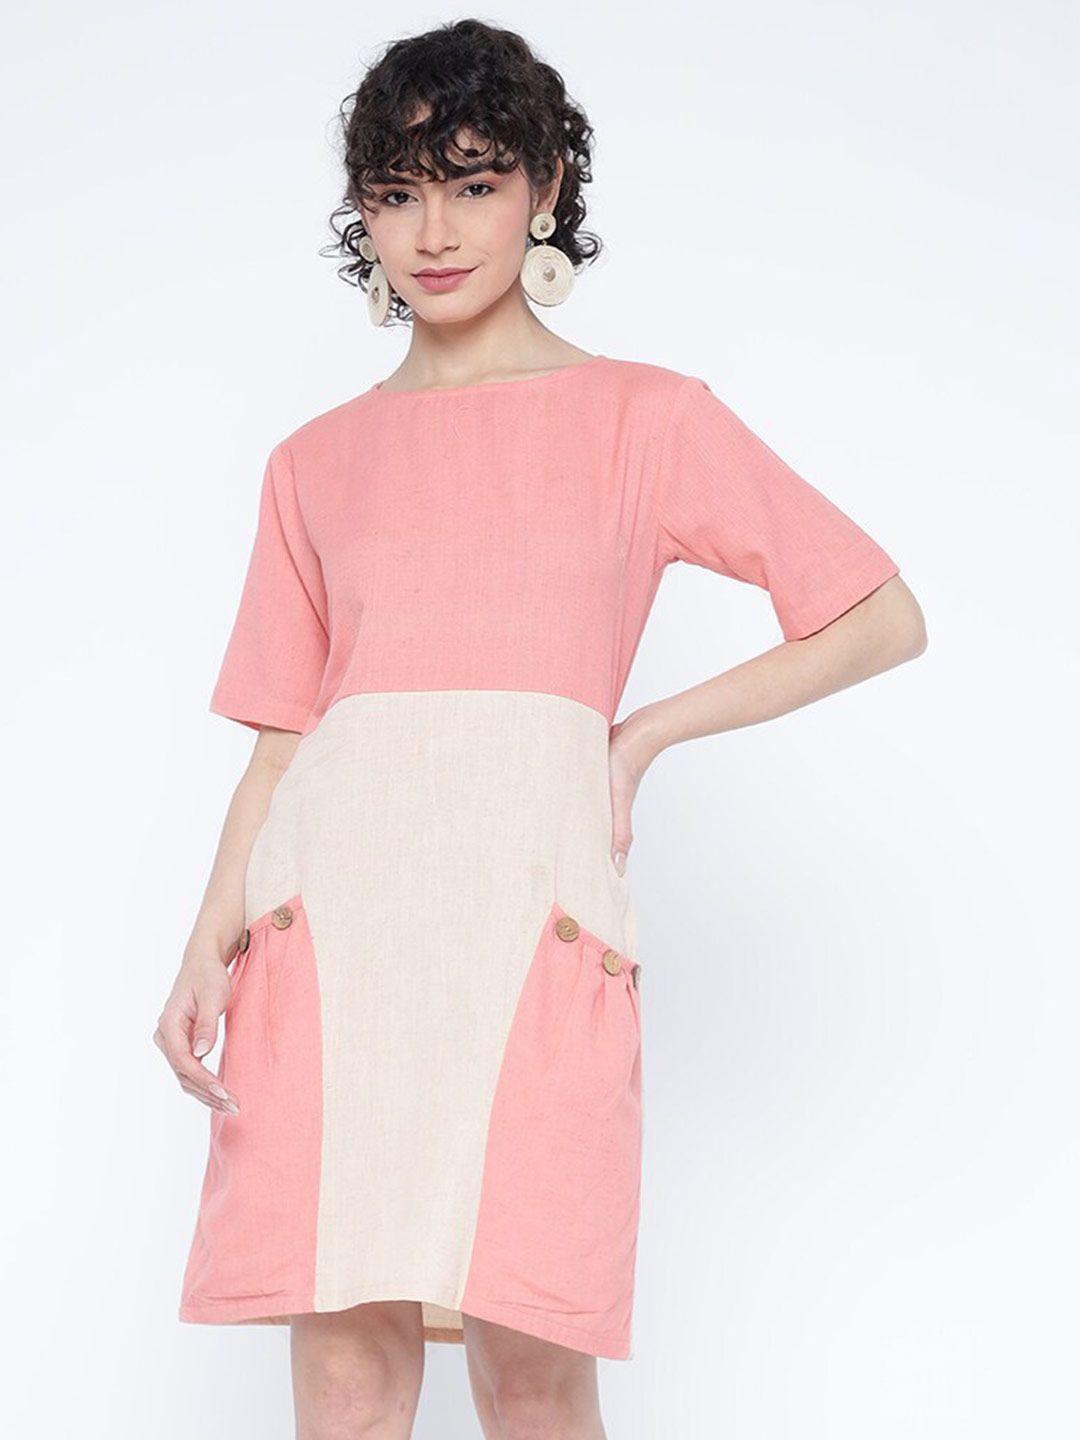 shurtz n skurtz colourblocked cotton a-line dress